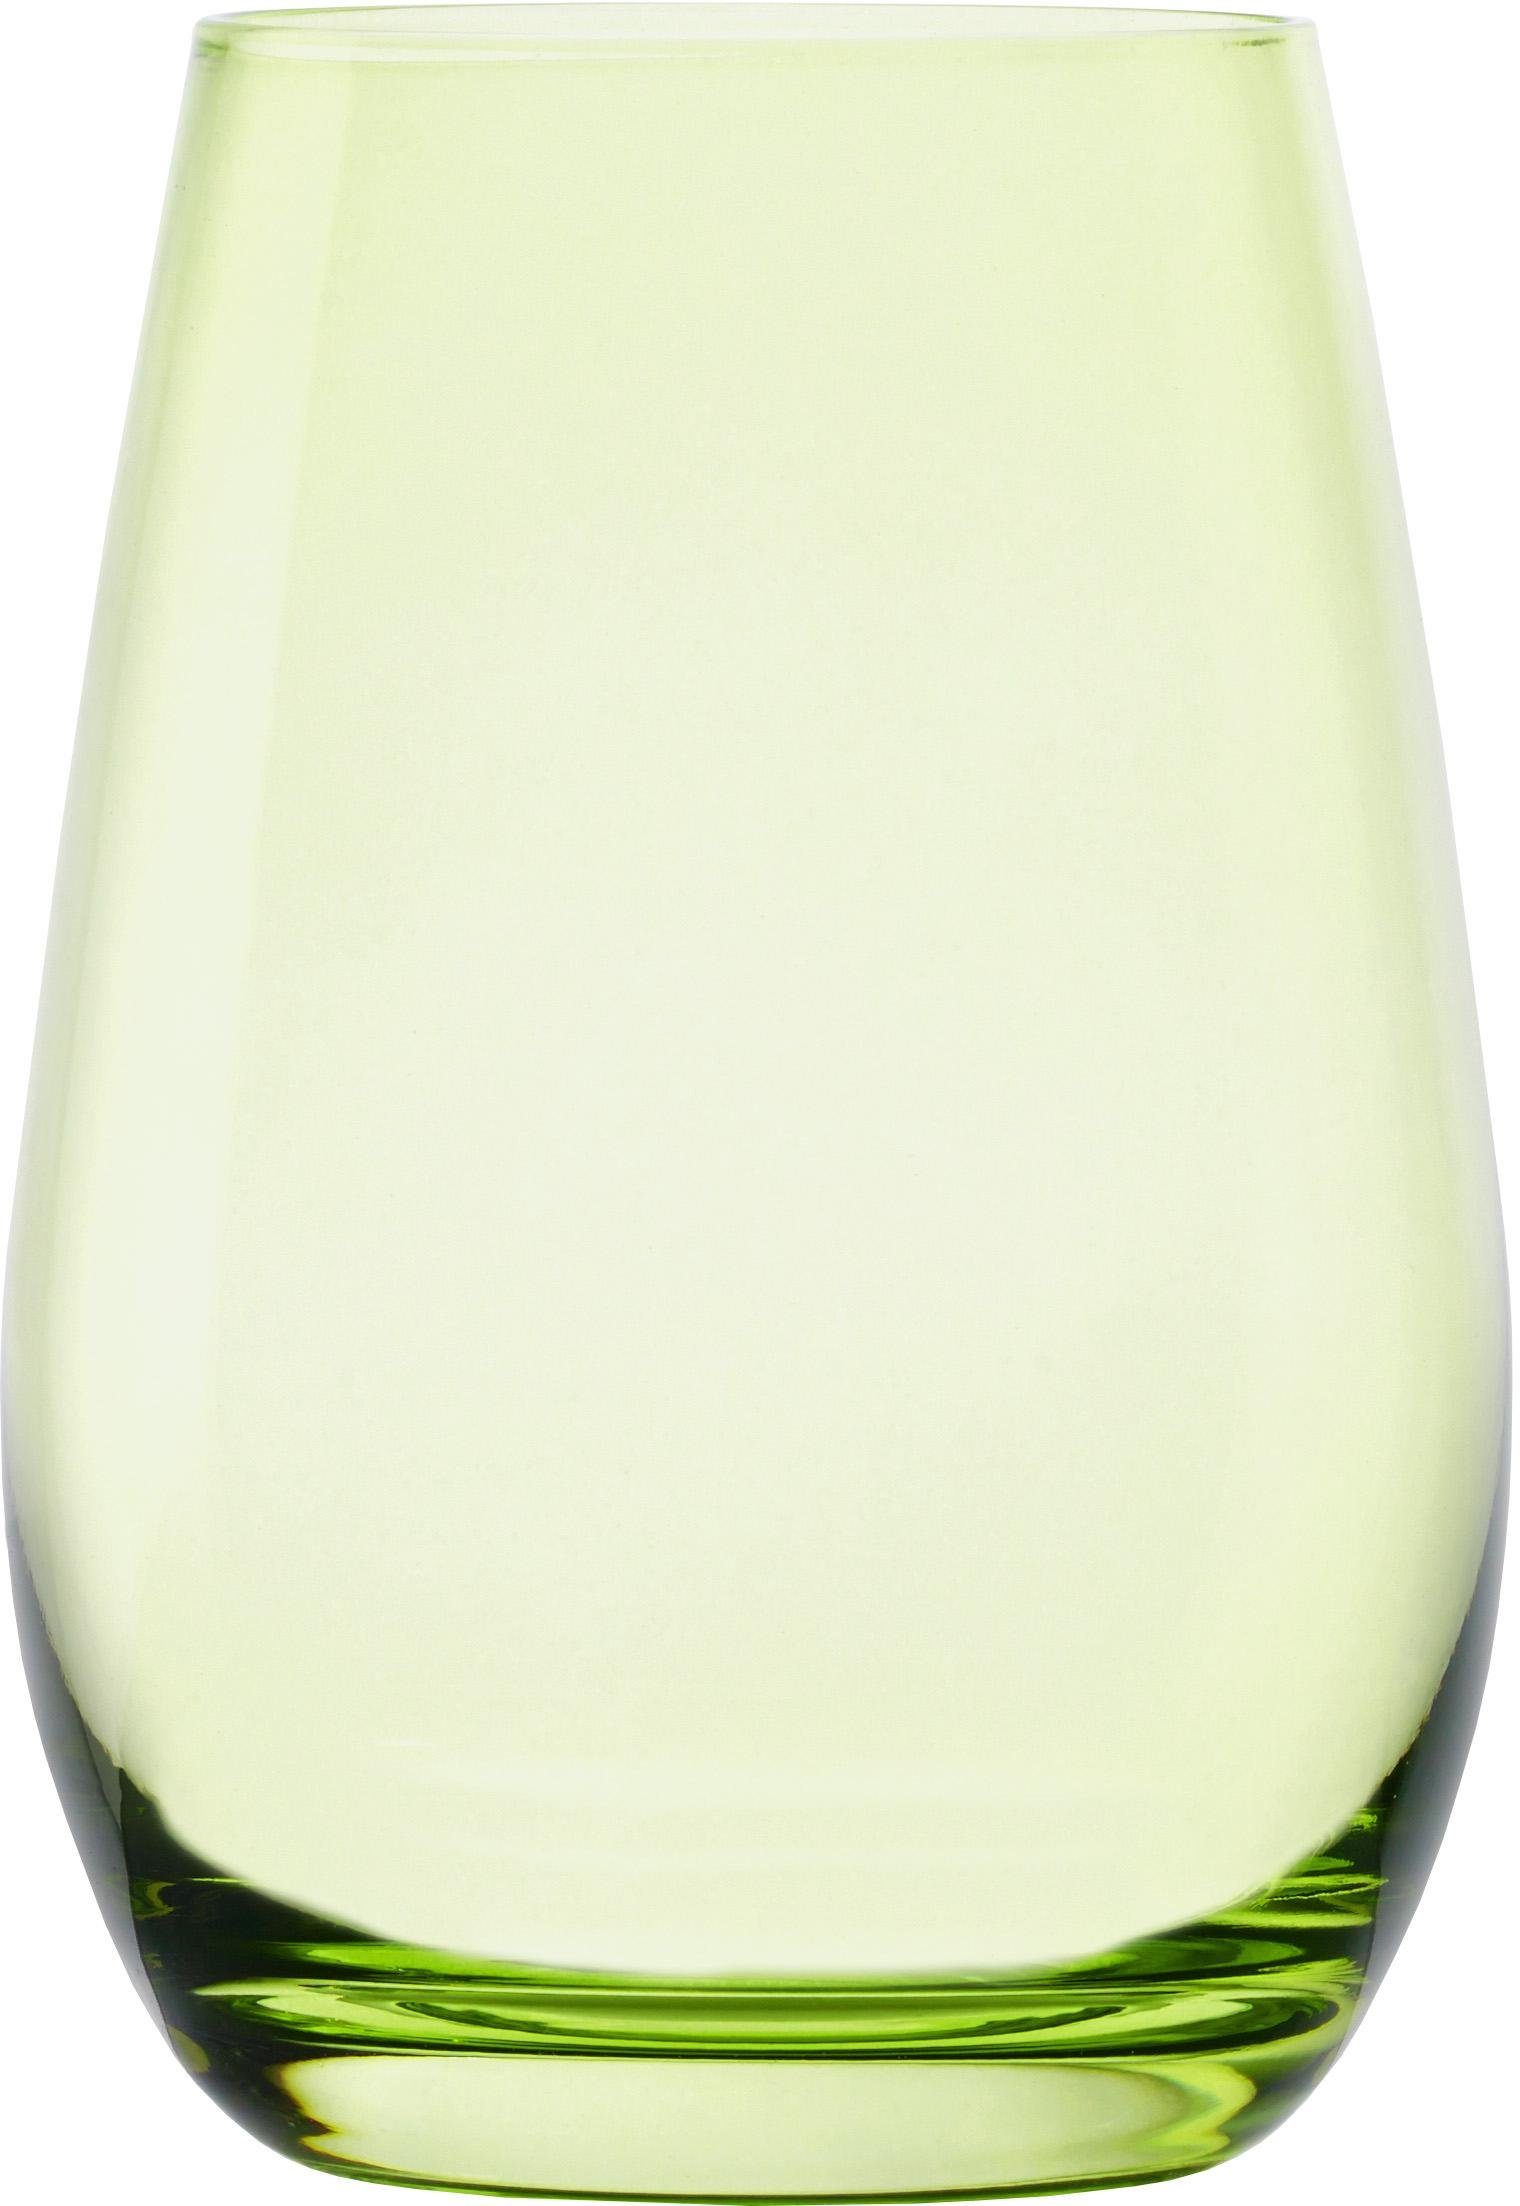 Stölzle Becher ELEMENTS, Glas, grün 6-teilig